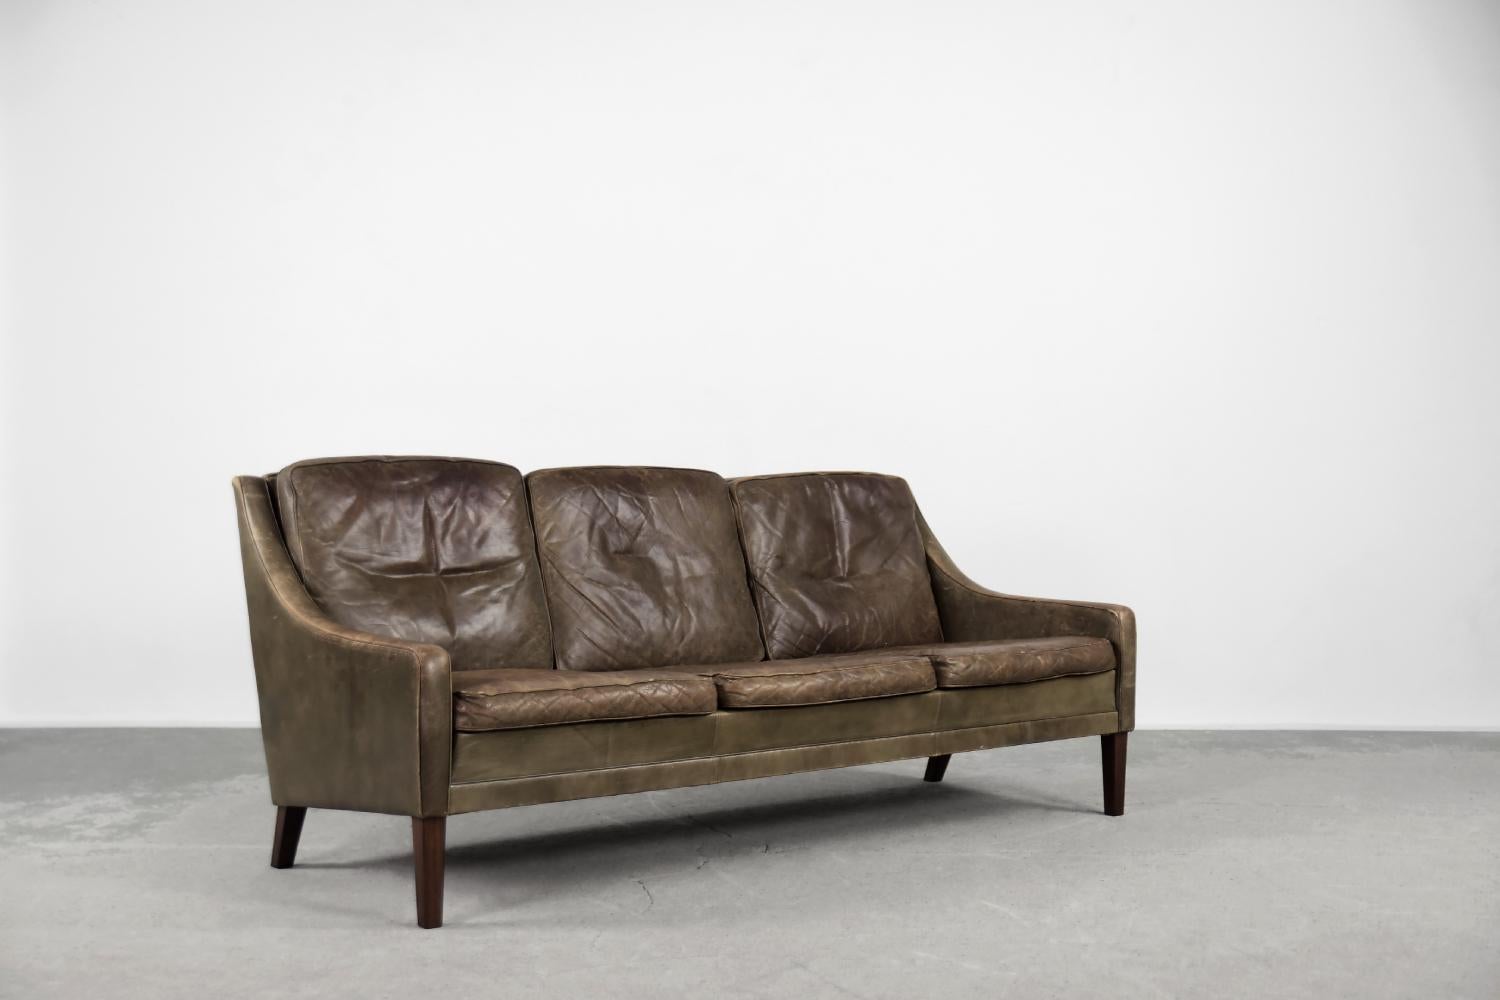 Dieses dreisitzige Mid-Century Modern Vintage-Sofa wurde in den 1950er Jahren in Dänemark hergestellt. Das Sofa ist mit Naturleder in einer braunen und erdigen Farbe gepolstert. Das Leder hat eine schöne originale Patina. Er hat drei lose Sitz- und